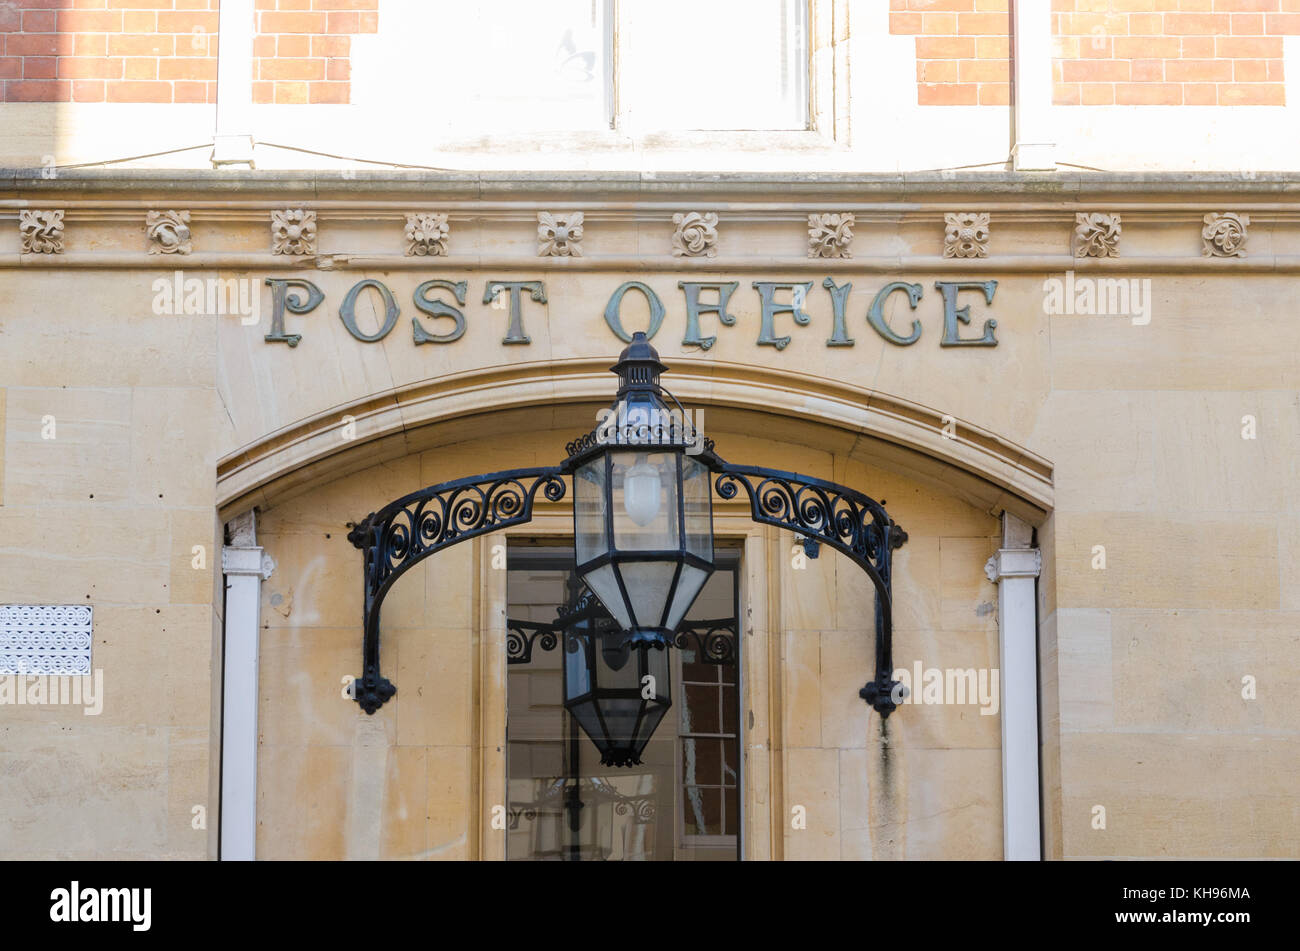 Old post office building dans le Vieux Carré, Warwick, Warwickshire, UK avec bureau de poste signe au-dessus de l'entrée et grande lanterne en acier noir Banque D'Images